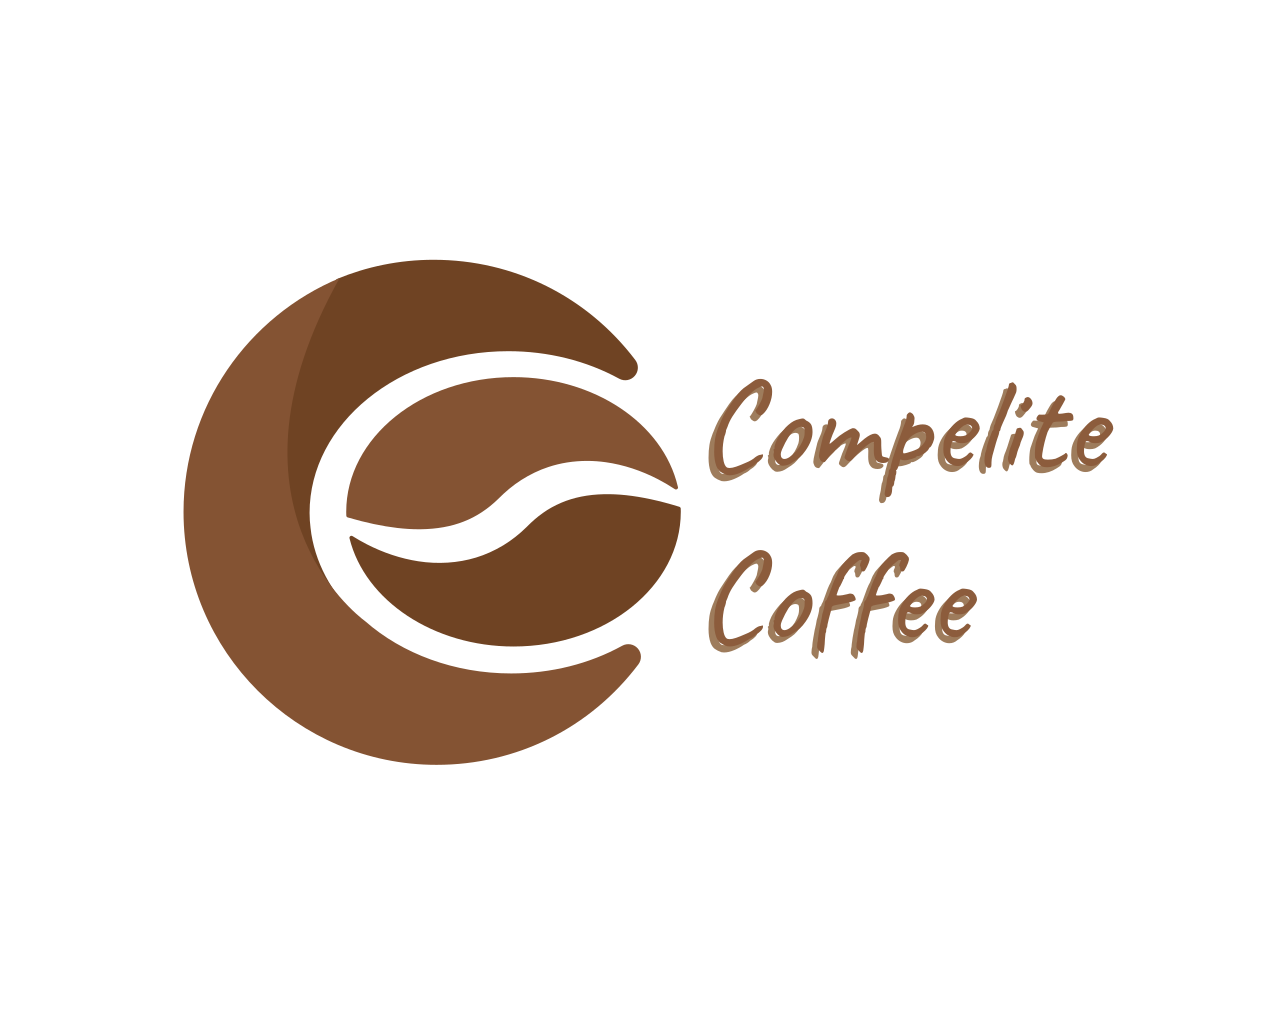 Compelite Coffee